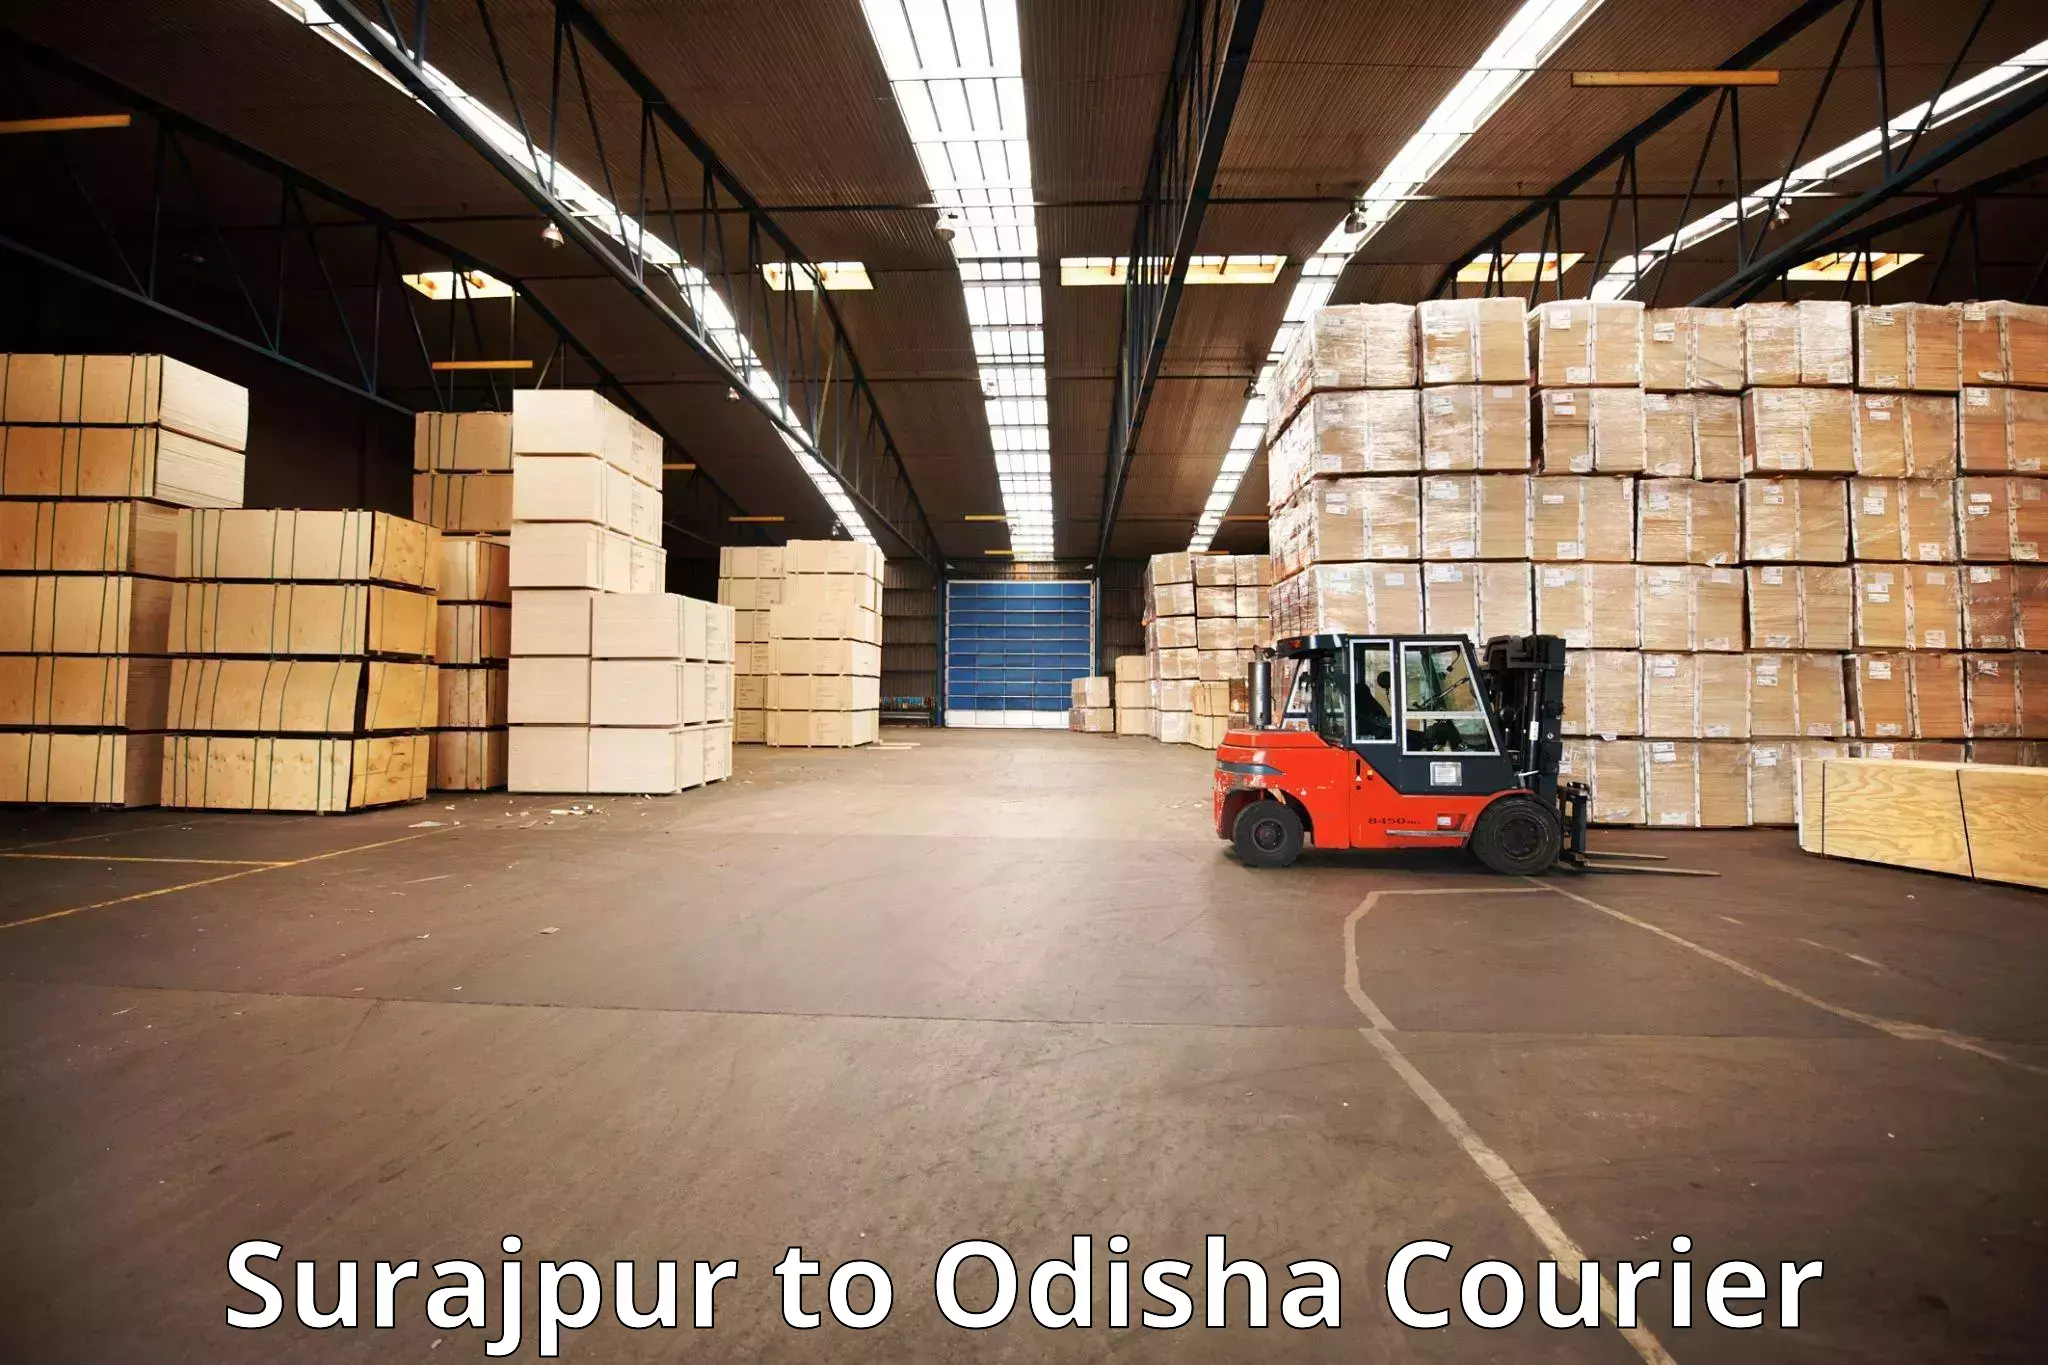 Luggage delivery network Surajpur to Muniguda